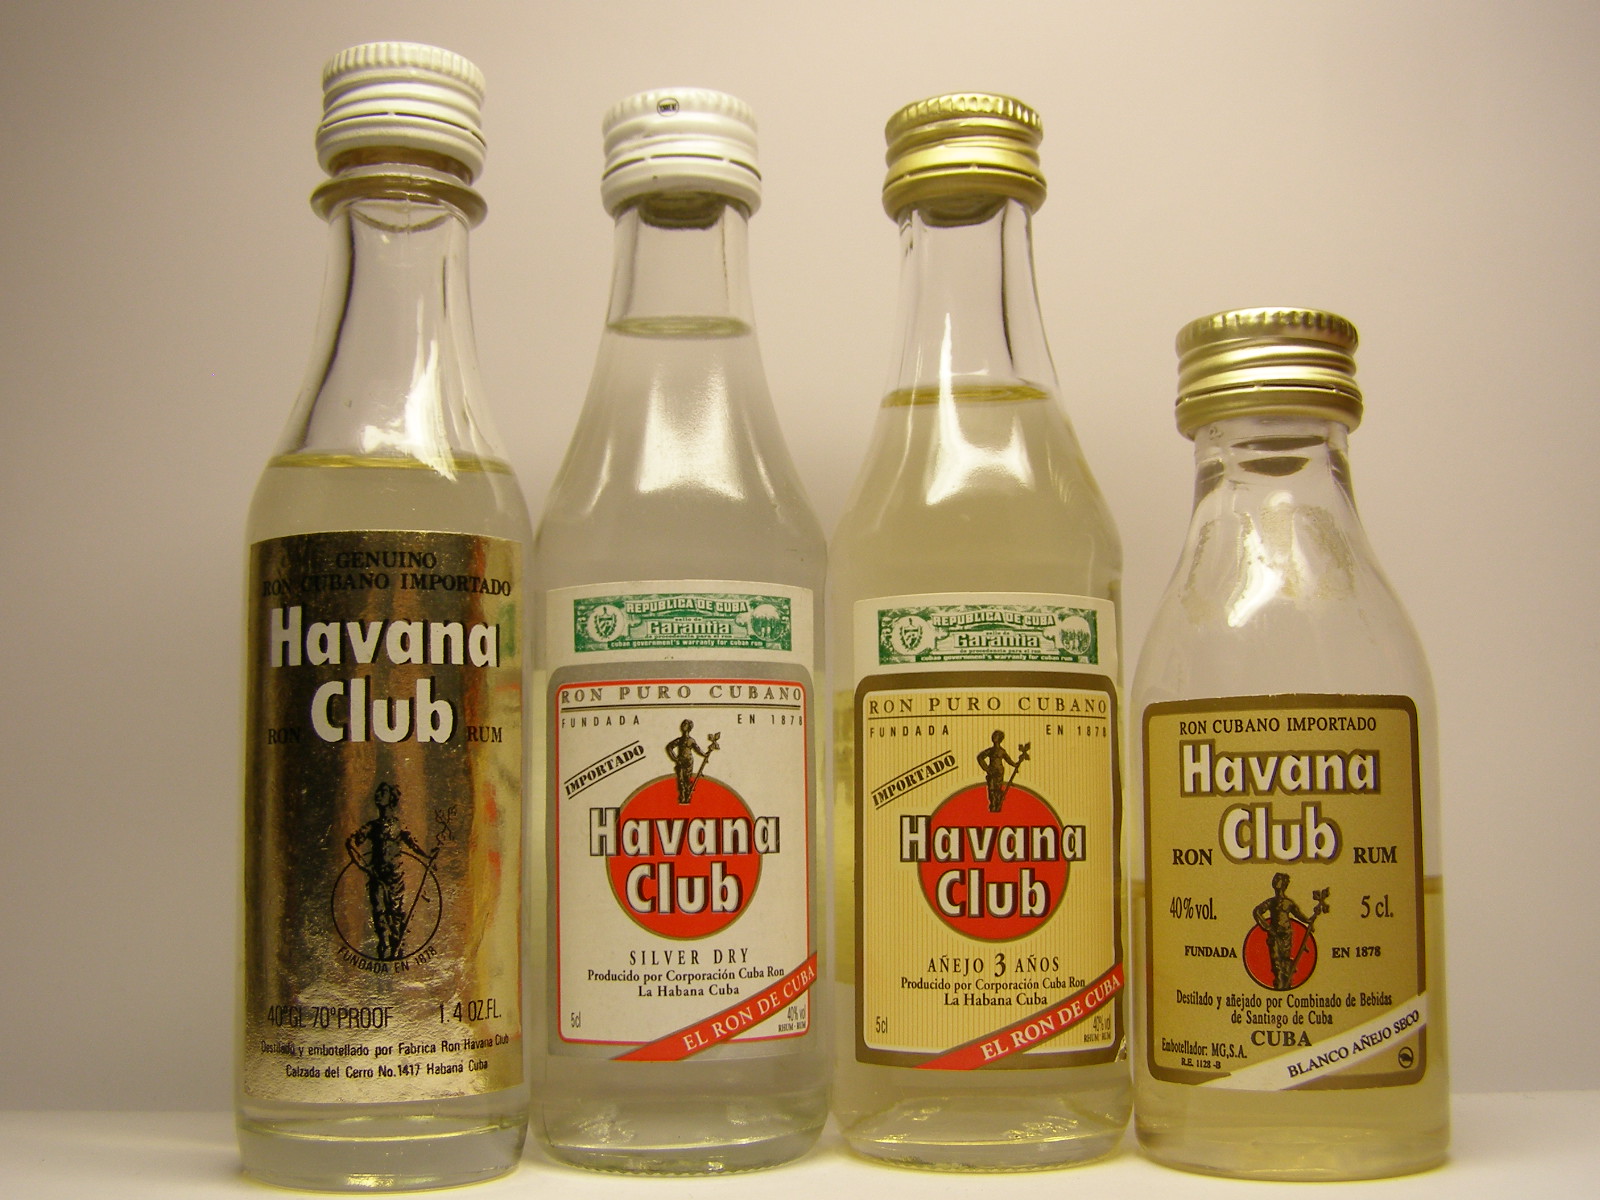 HAVANA CLUB Ron - Silver - 3aňos - BlancoAňejo